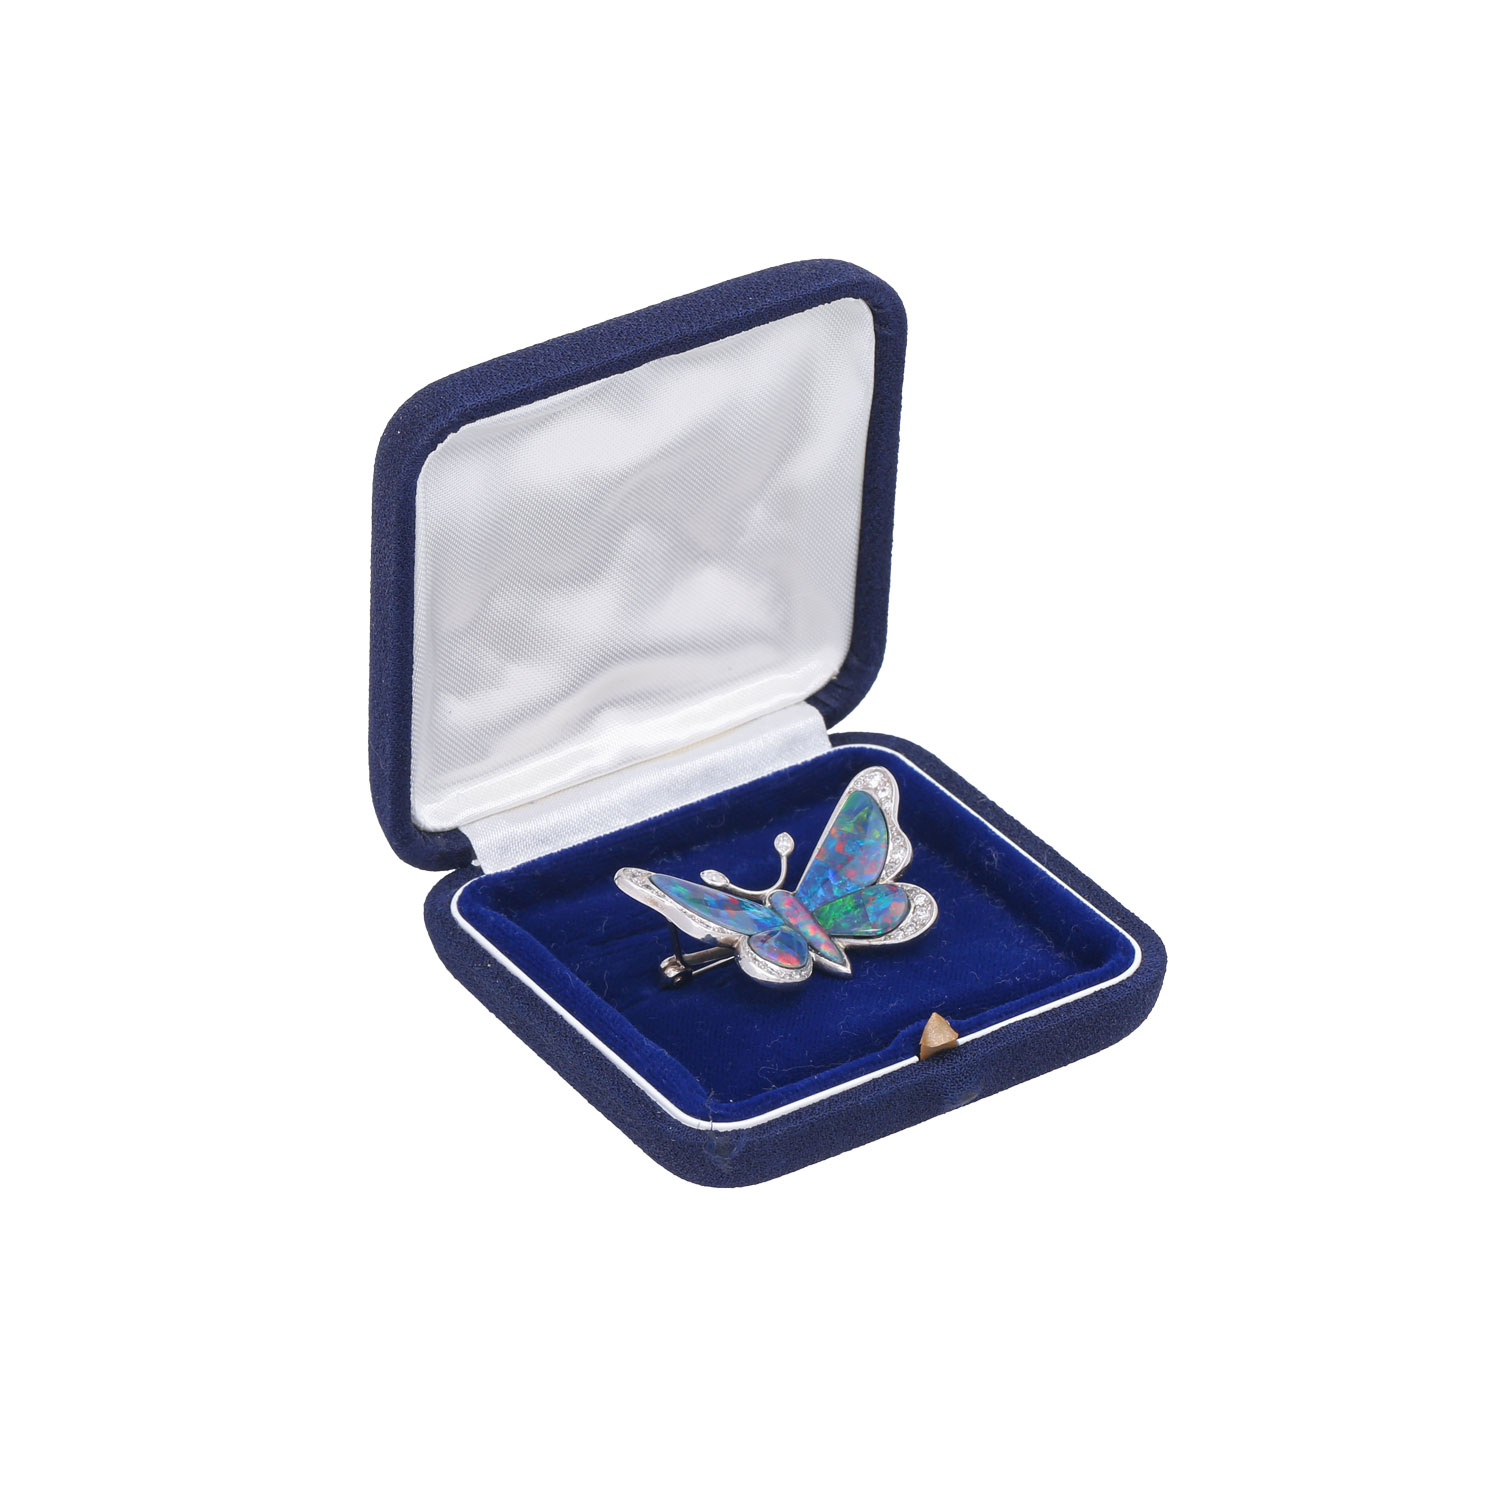 Brosche "Schmetterling" mit Opaltripletten und Diamanten von ca. 0,2 ct, - Image 5 of 5